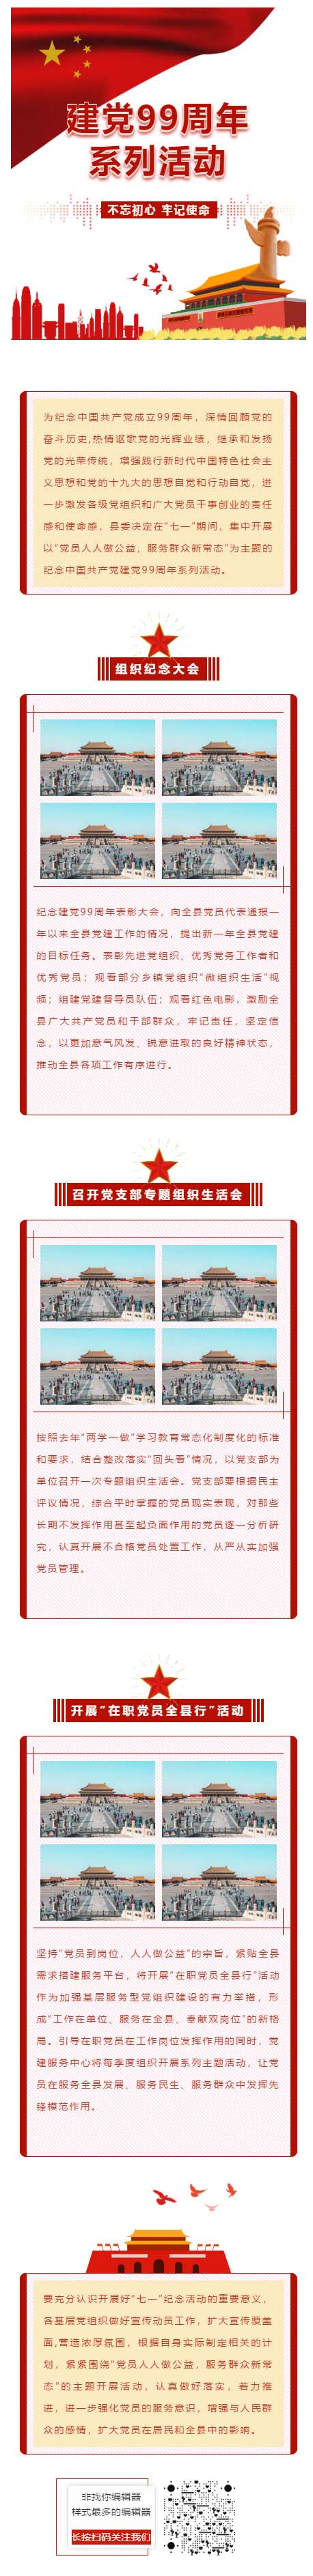 建党红色党政风格红旗红星微信推送图文模板